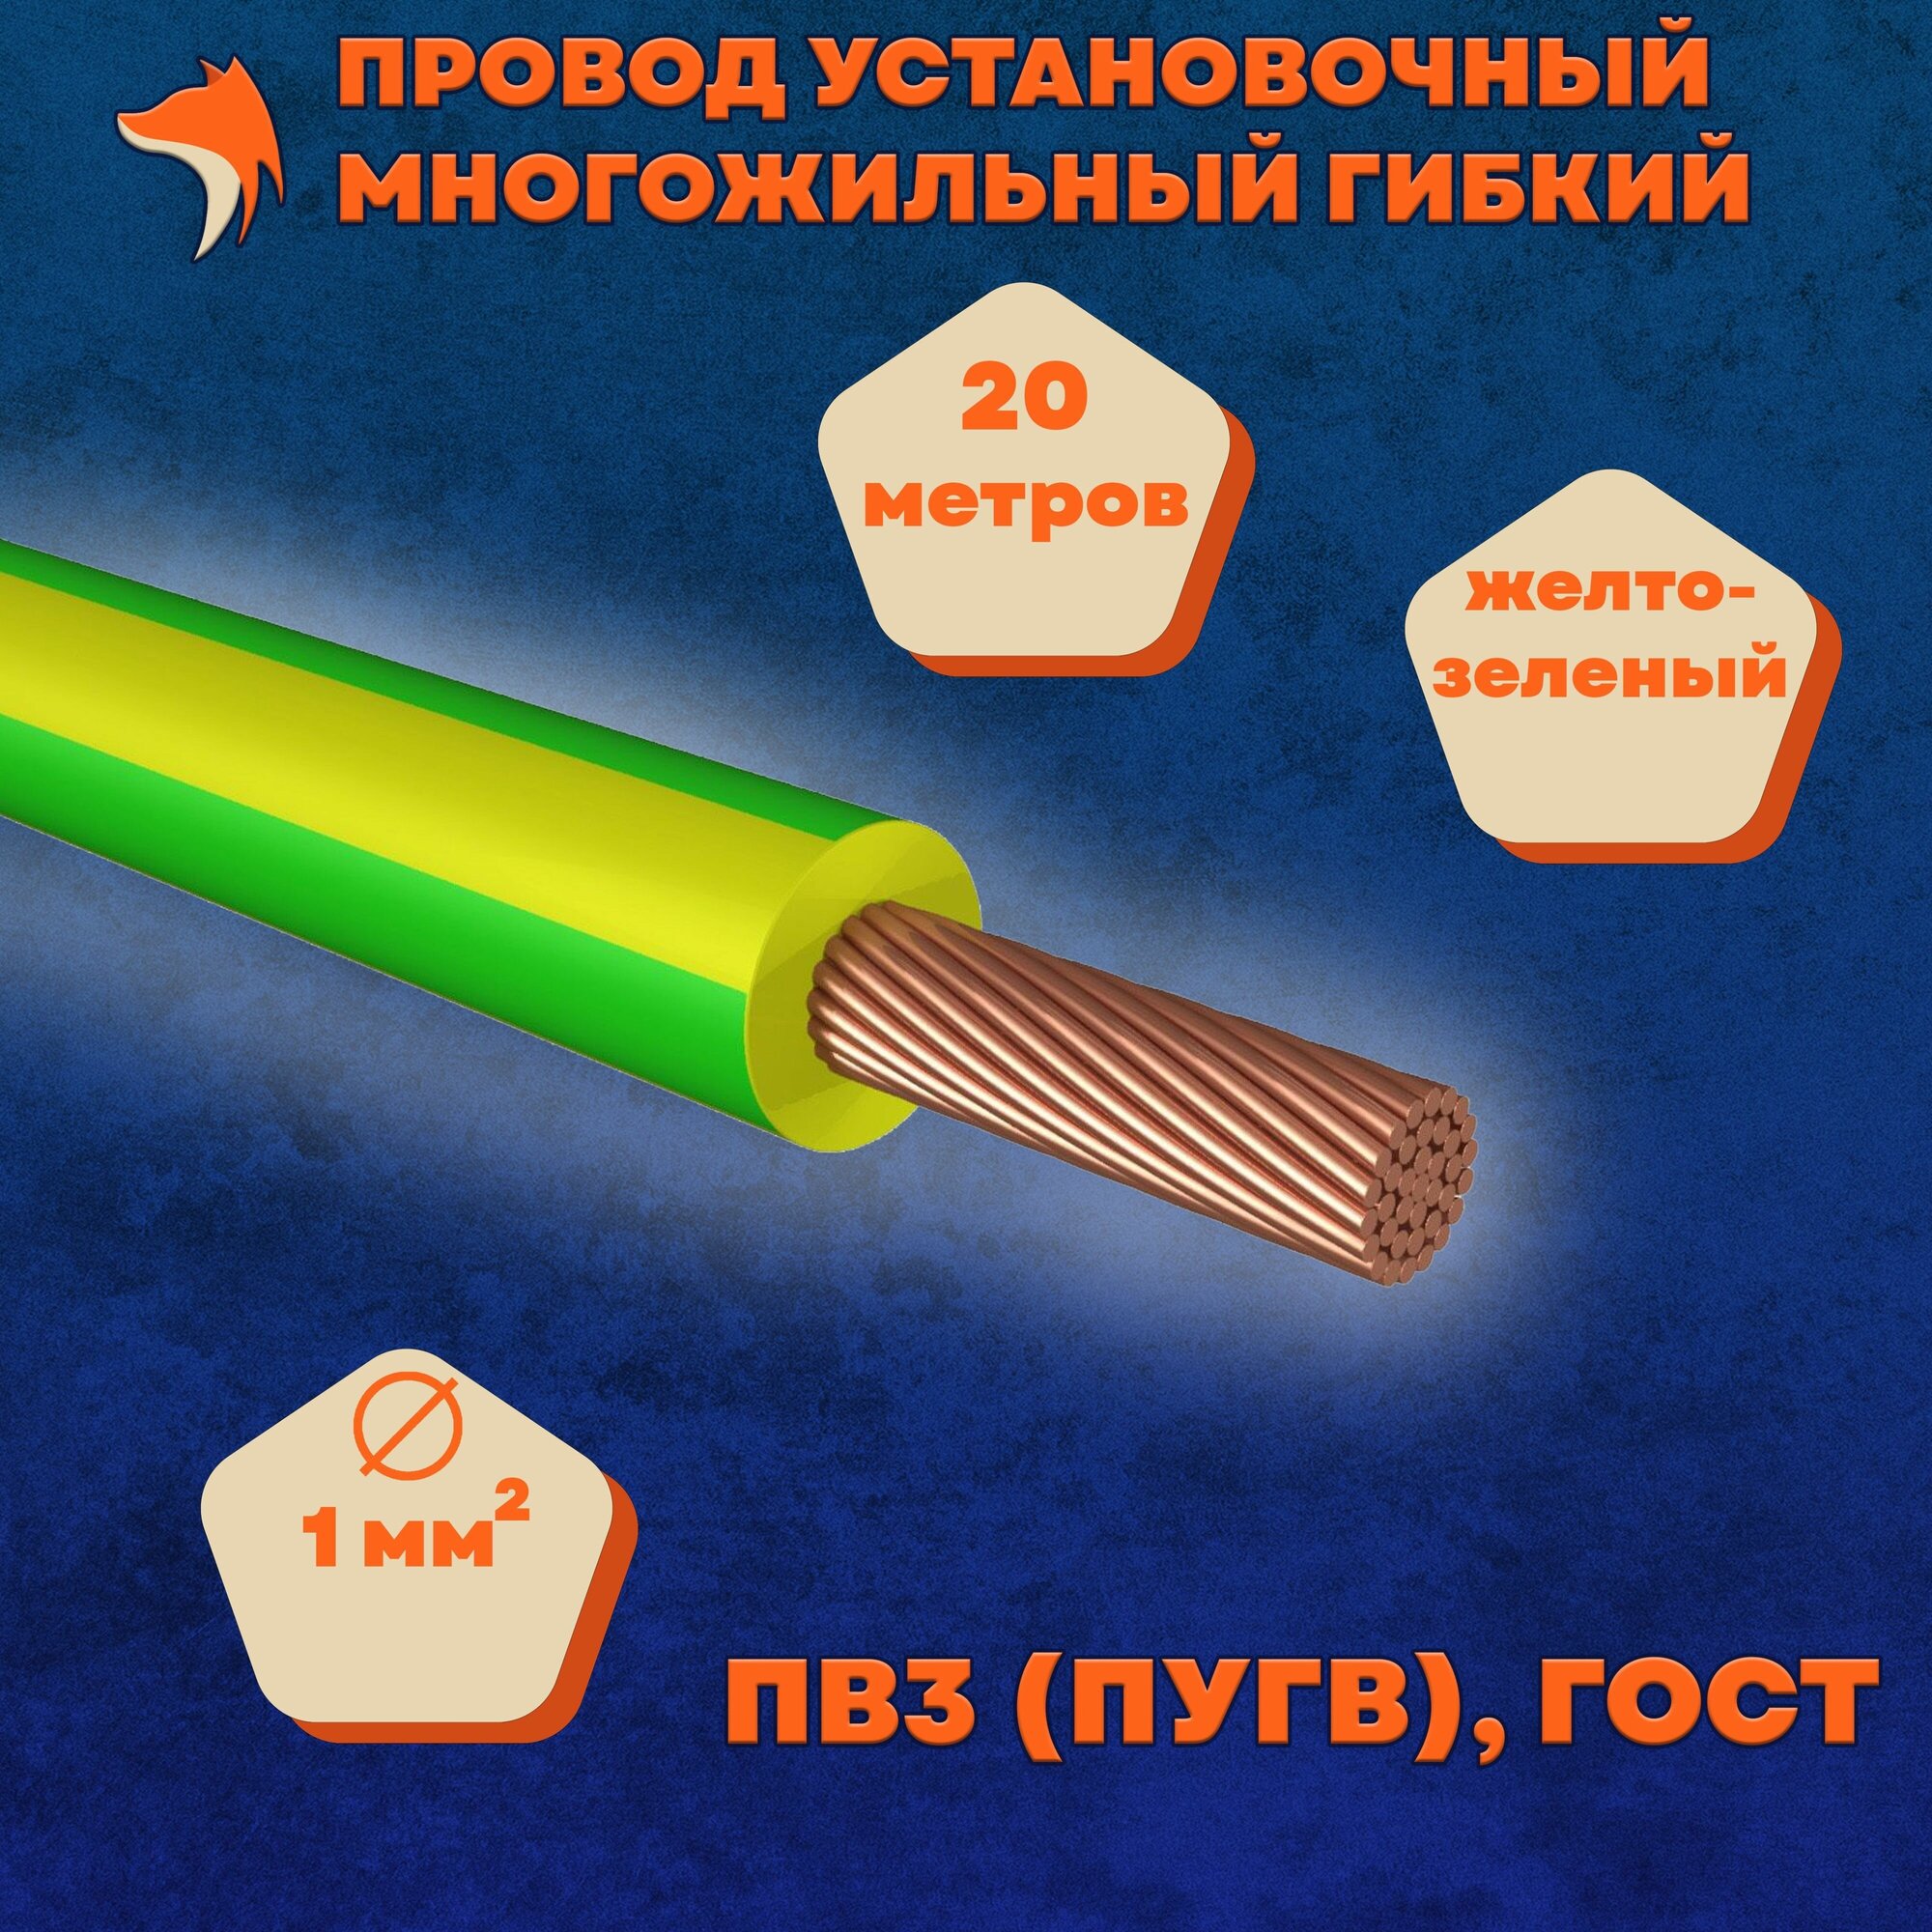 Провод установочный многожильный гибкий ПВ3 (ПуГВ) 1 мм , желто-зеленый, 20 метров - фотография № 1